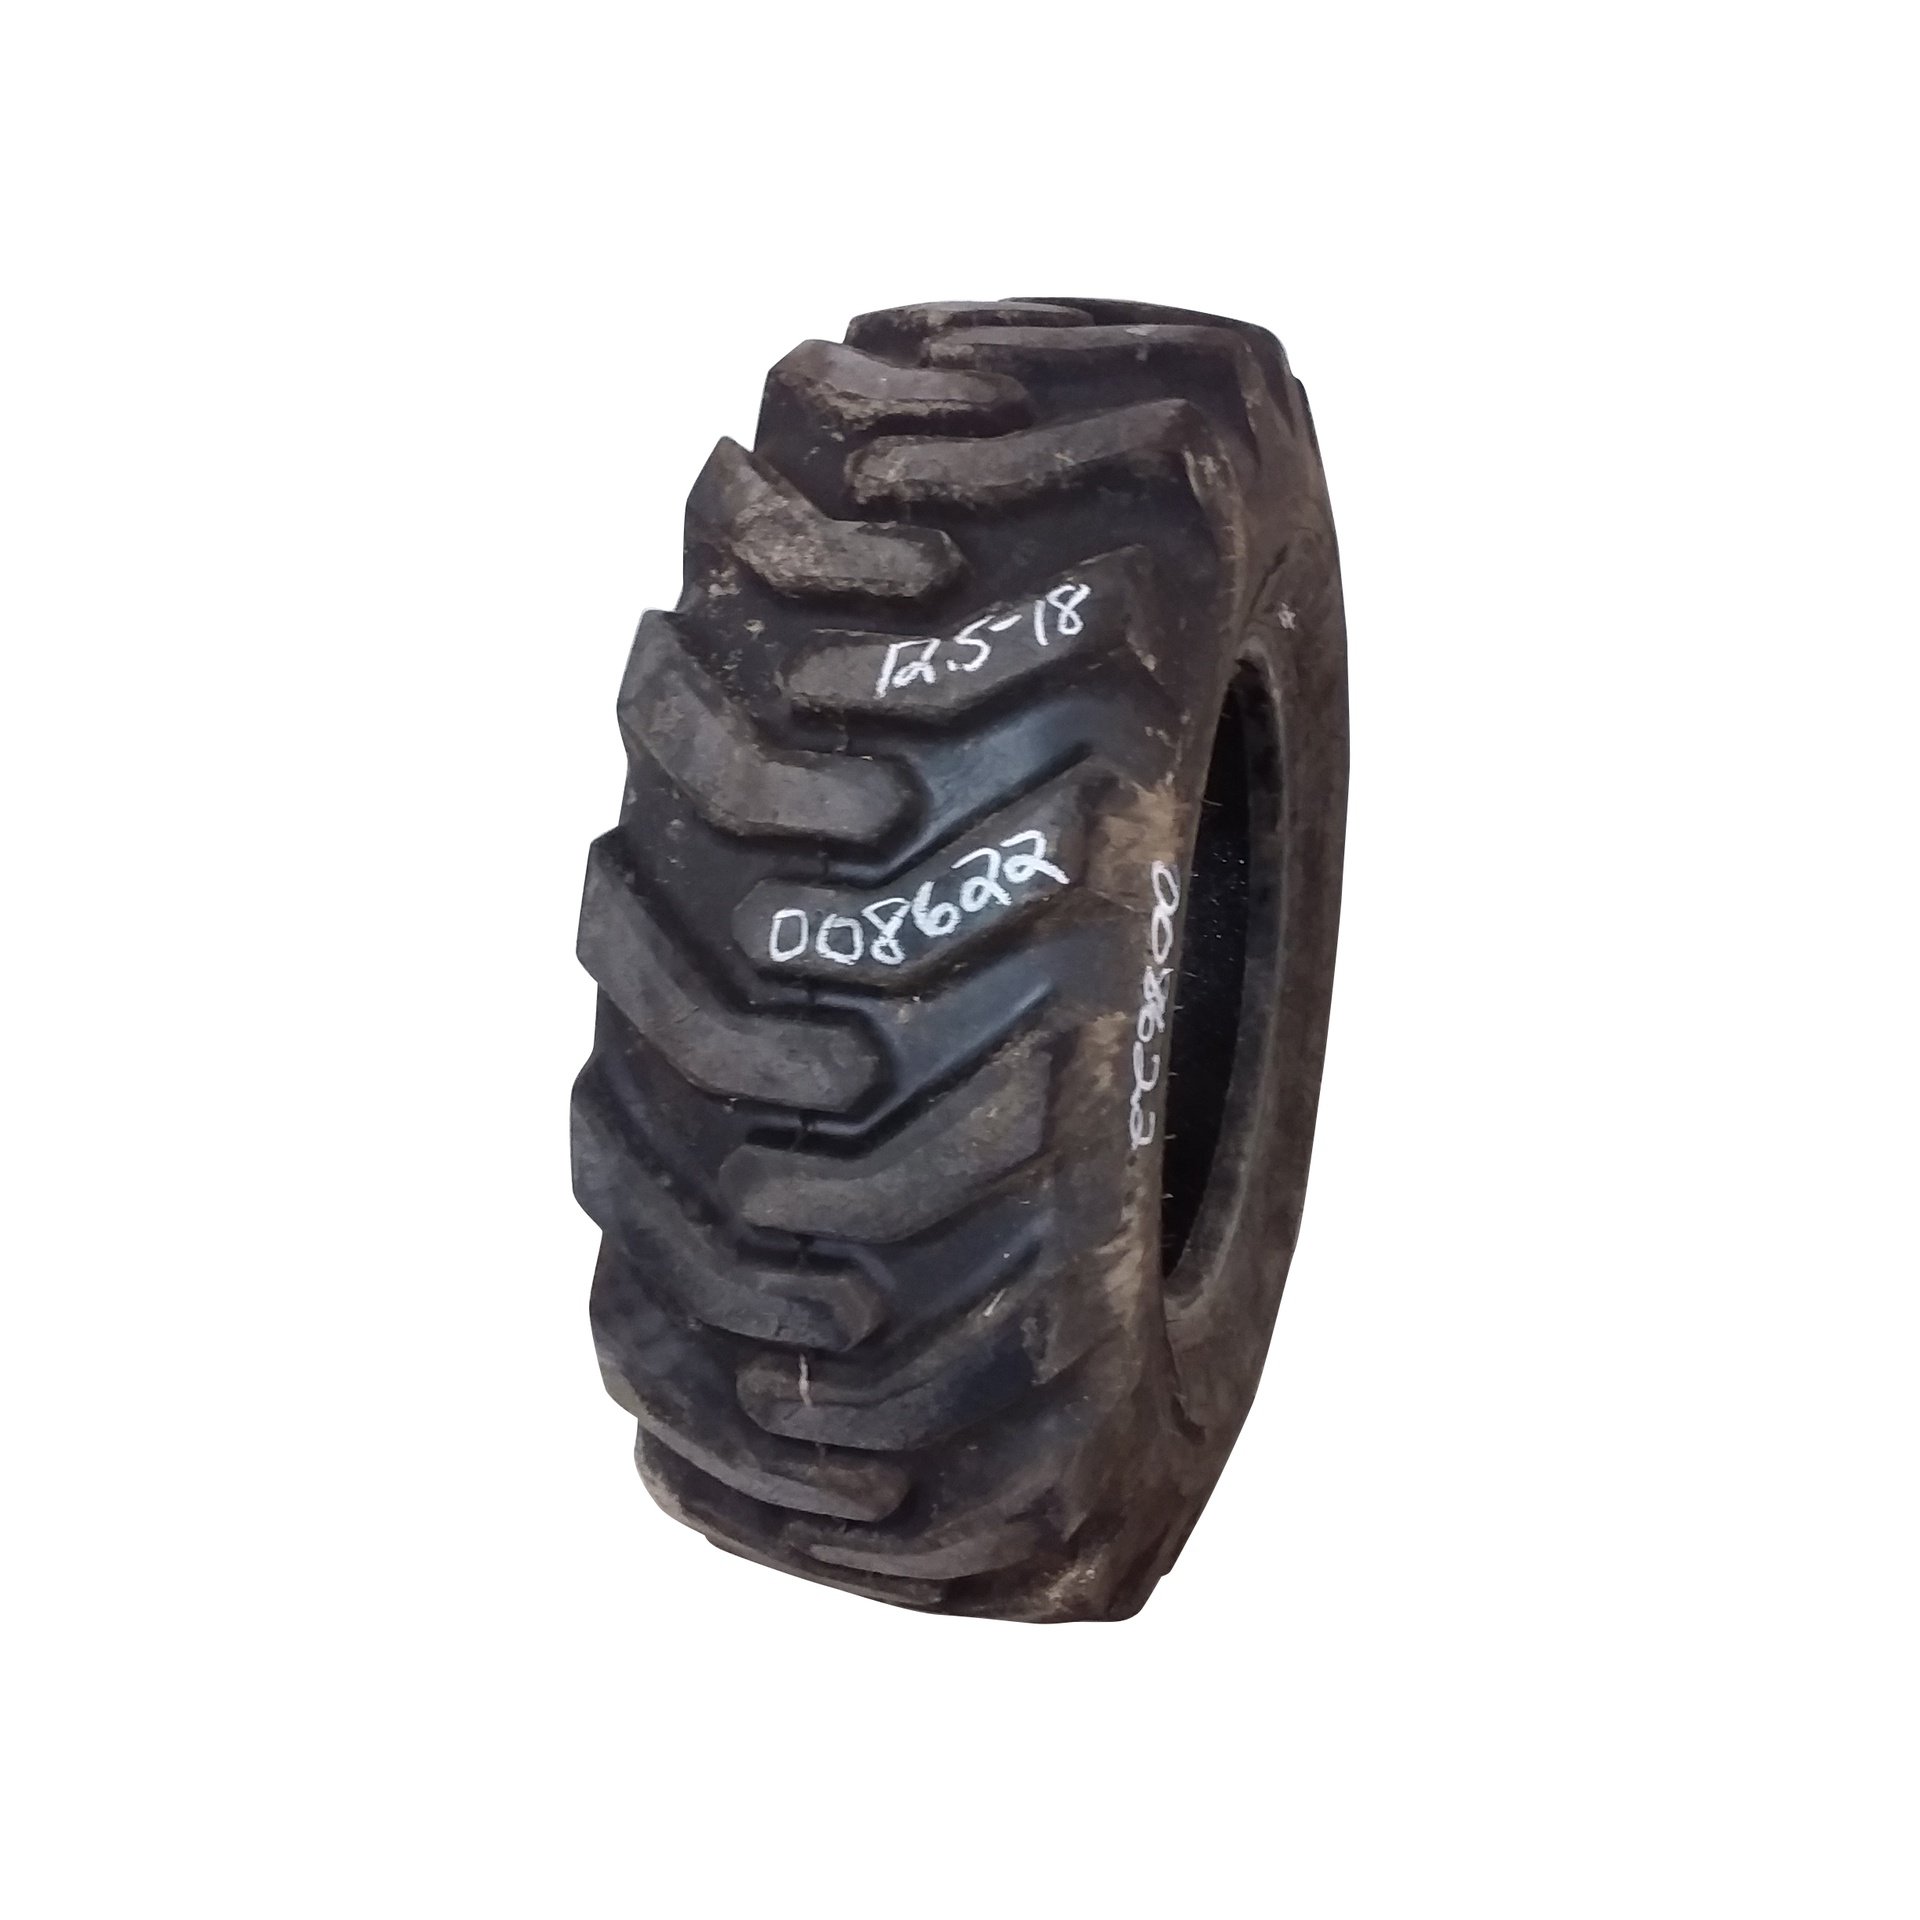 Firestone Super Traction Loader I-3 Farm Tire 12.5/80-18 